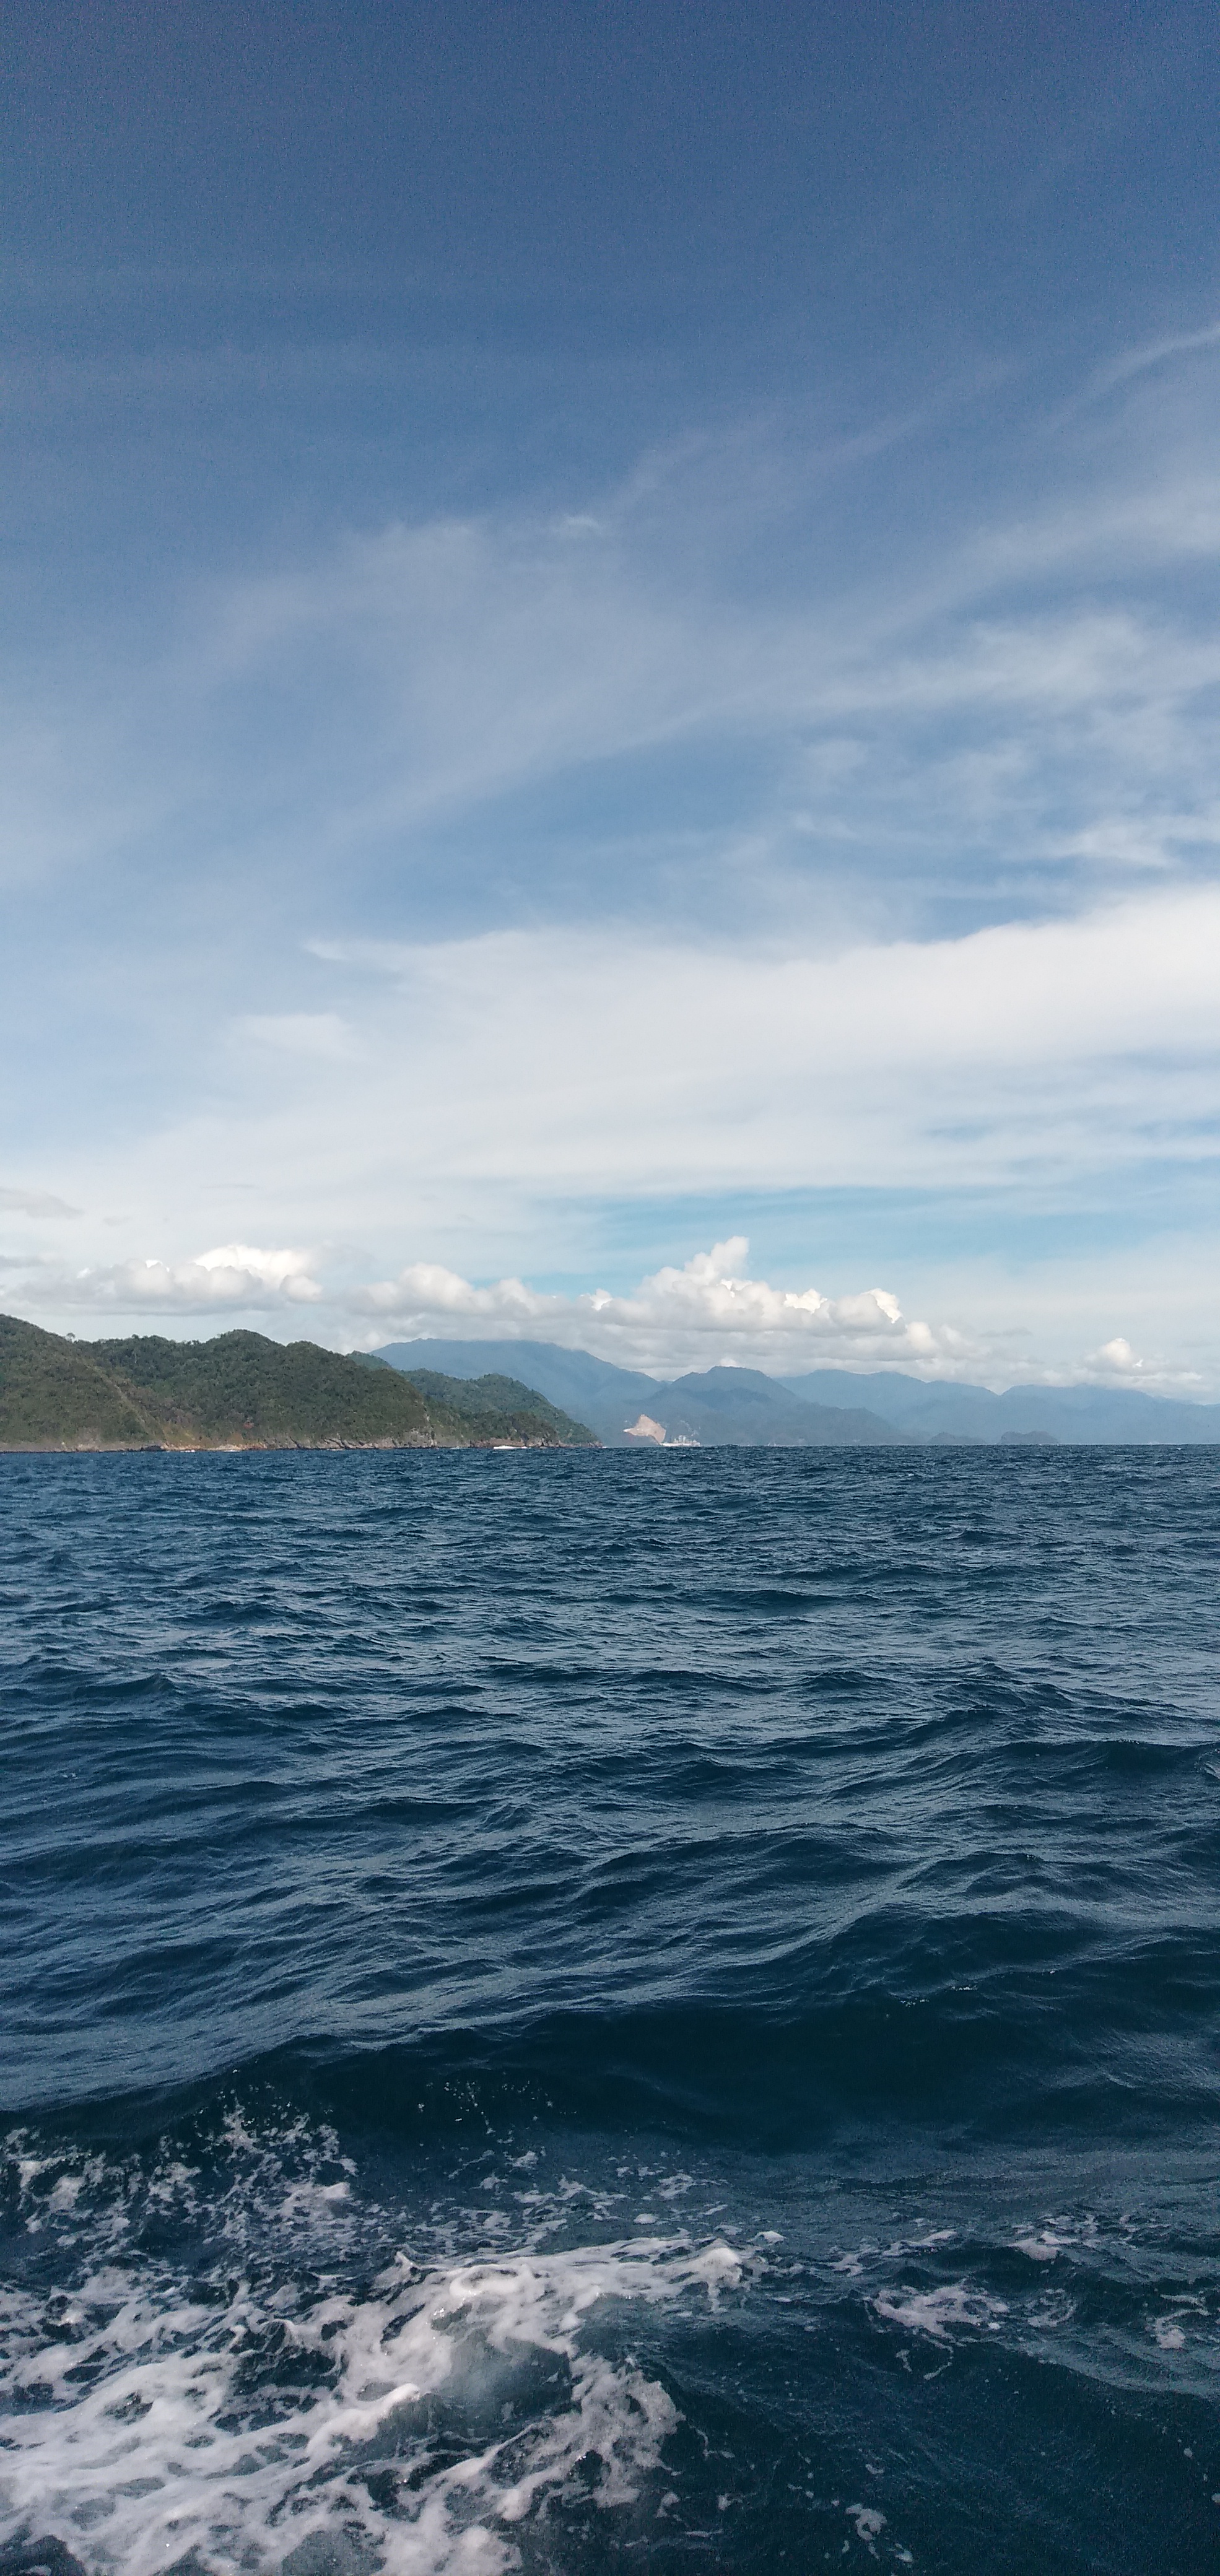 Pemandangan Yang Indah Di Laut Samudera Indonesia Bosferi123